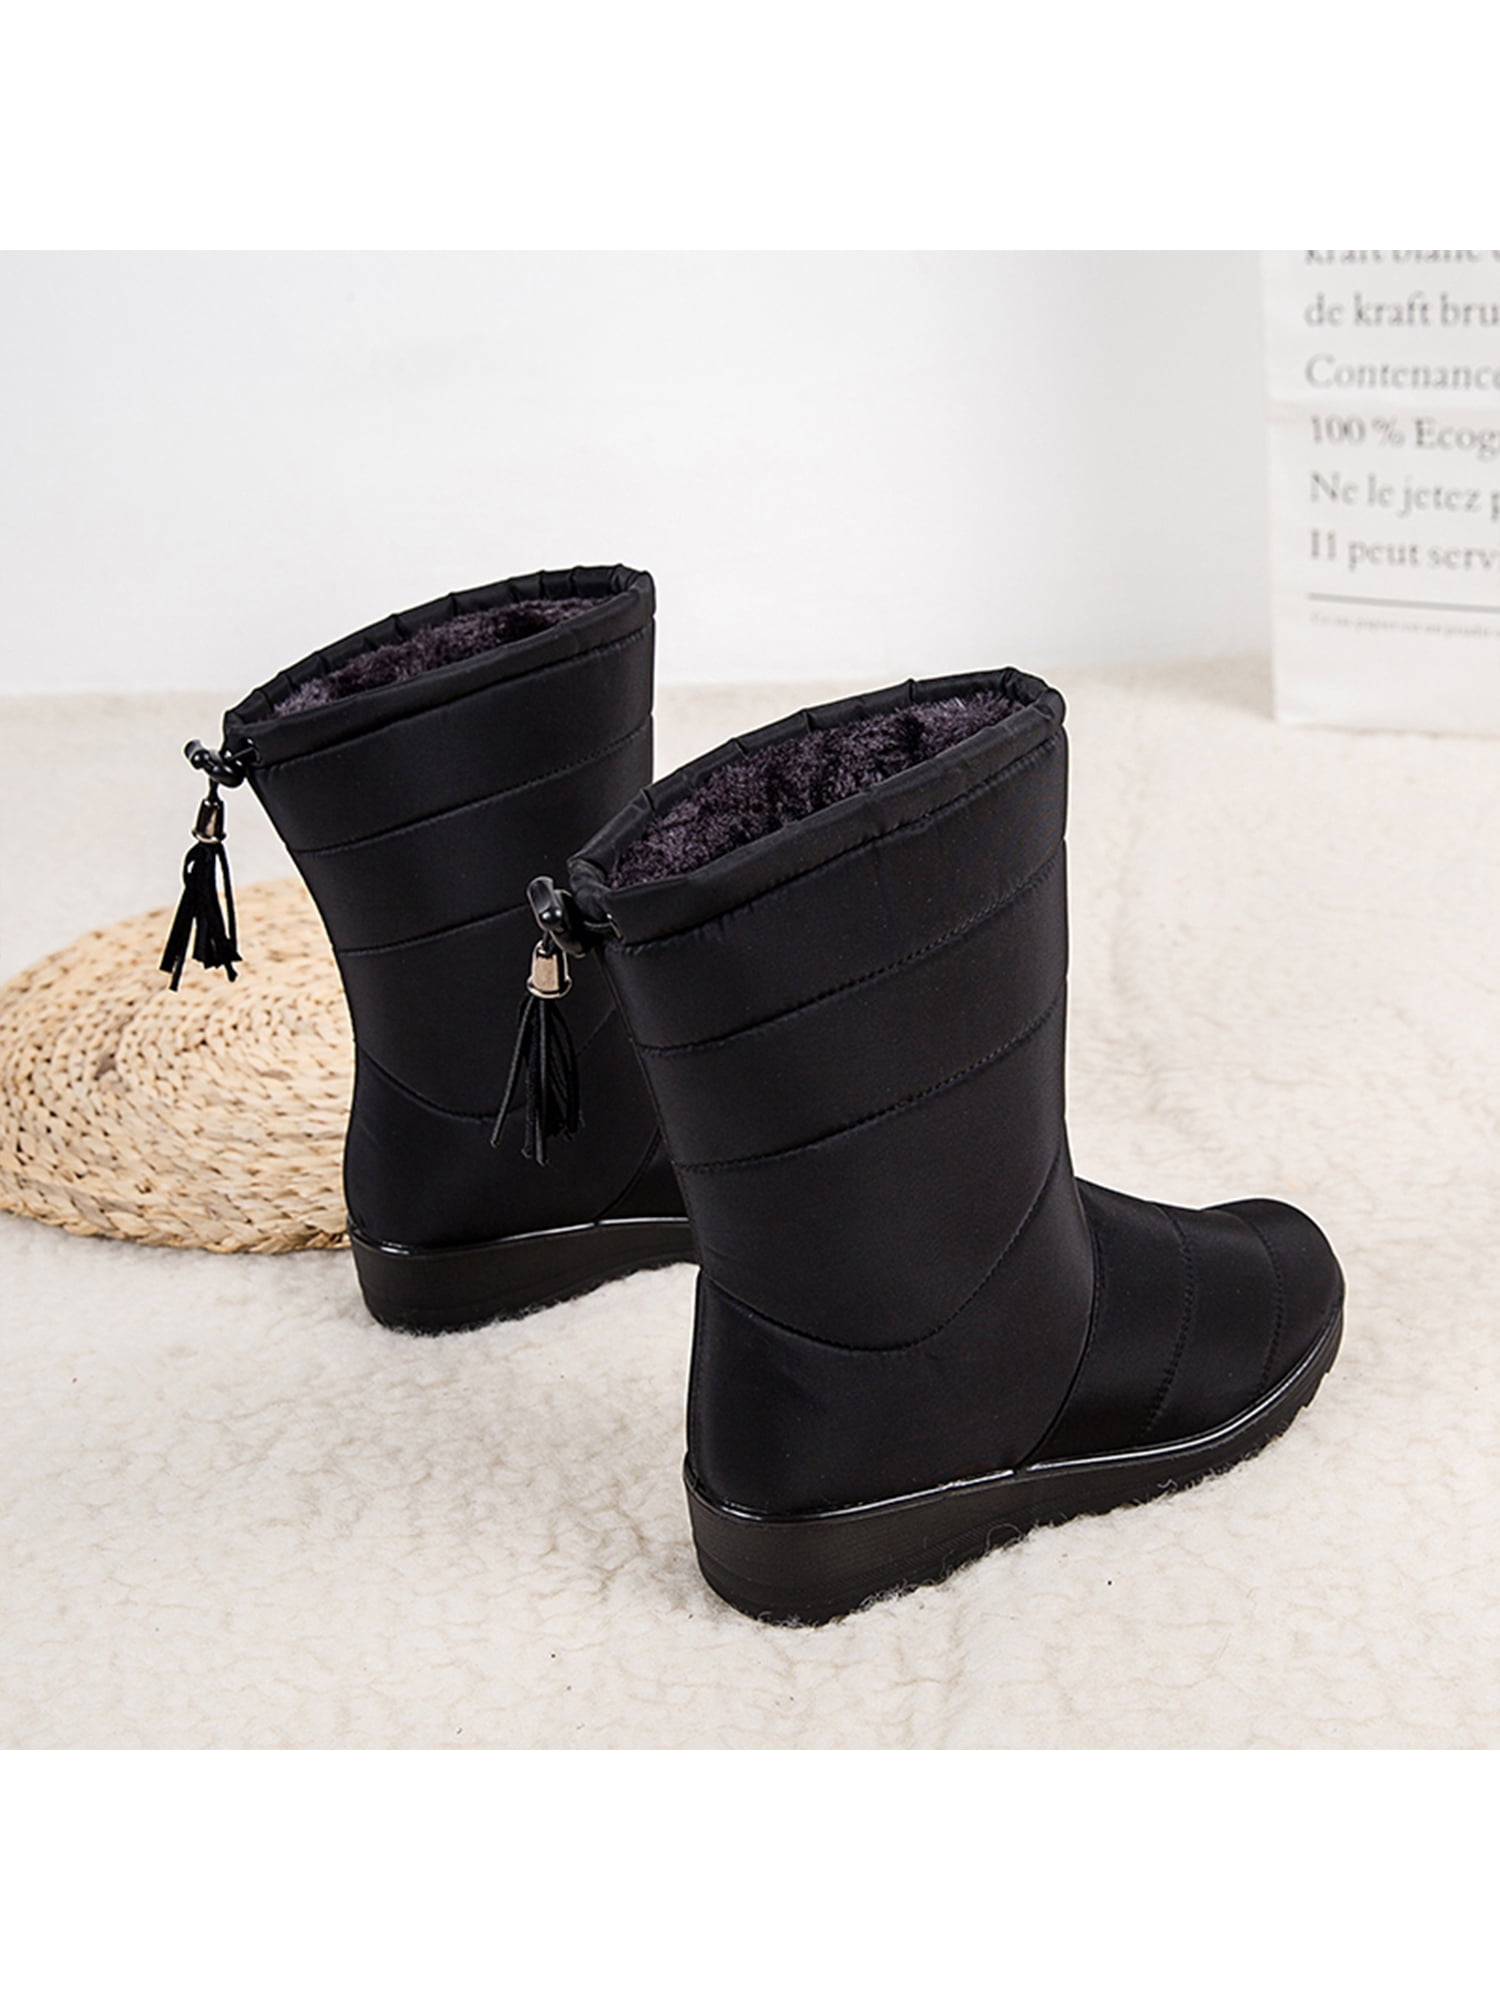 wedge heel winter boots